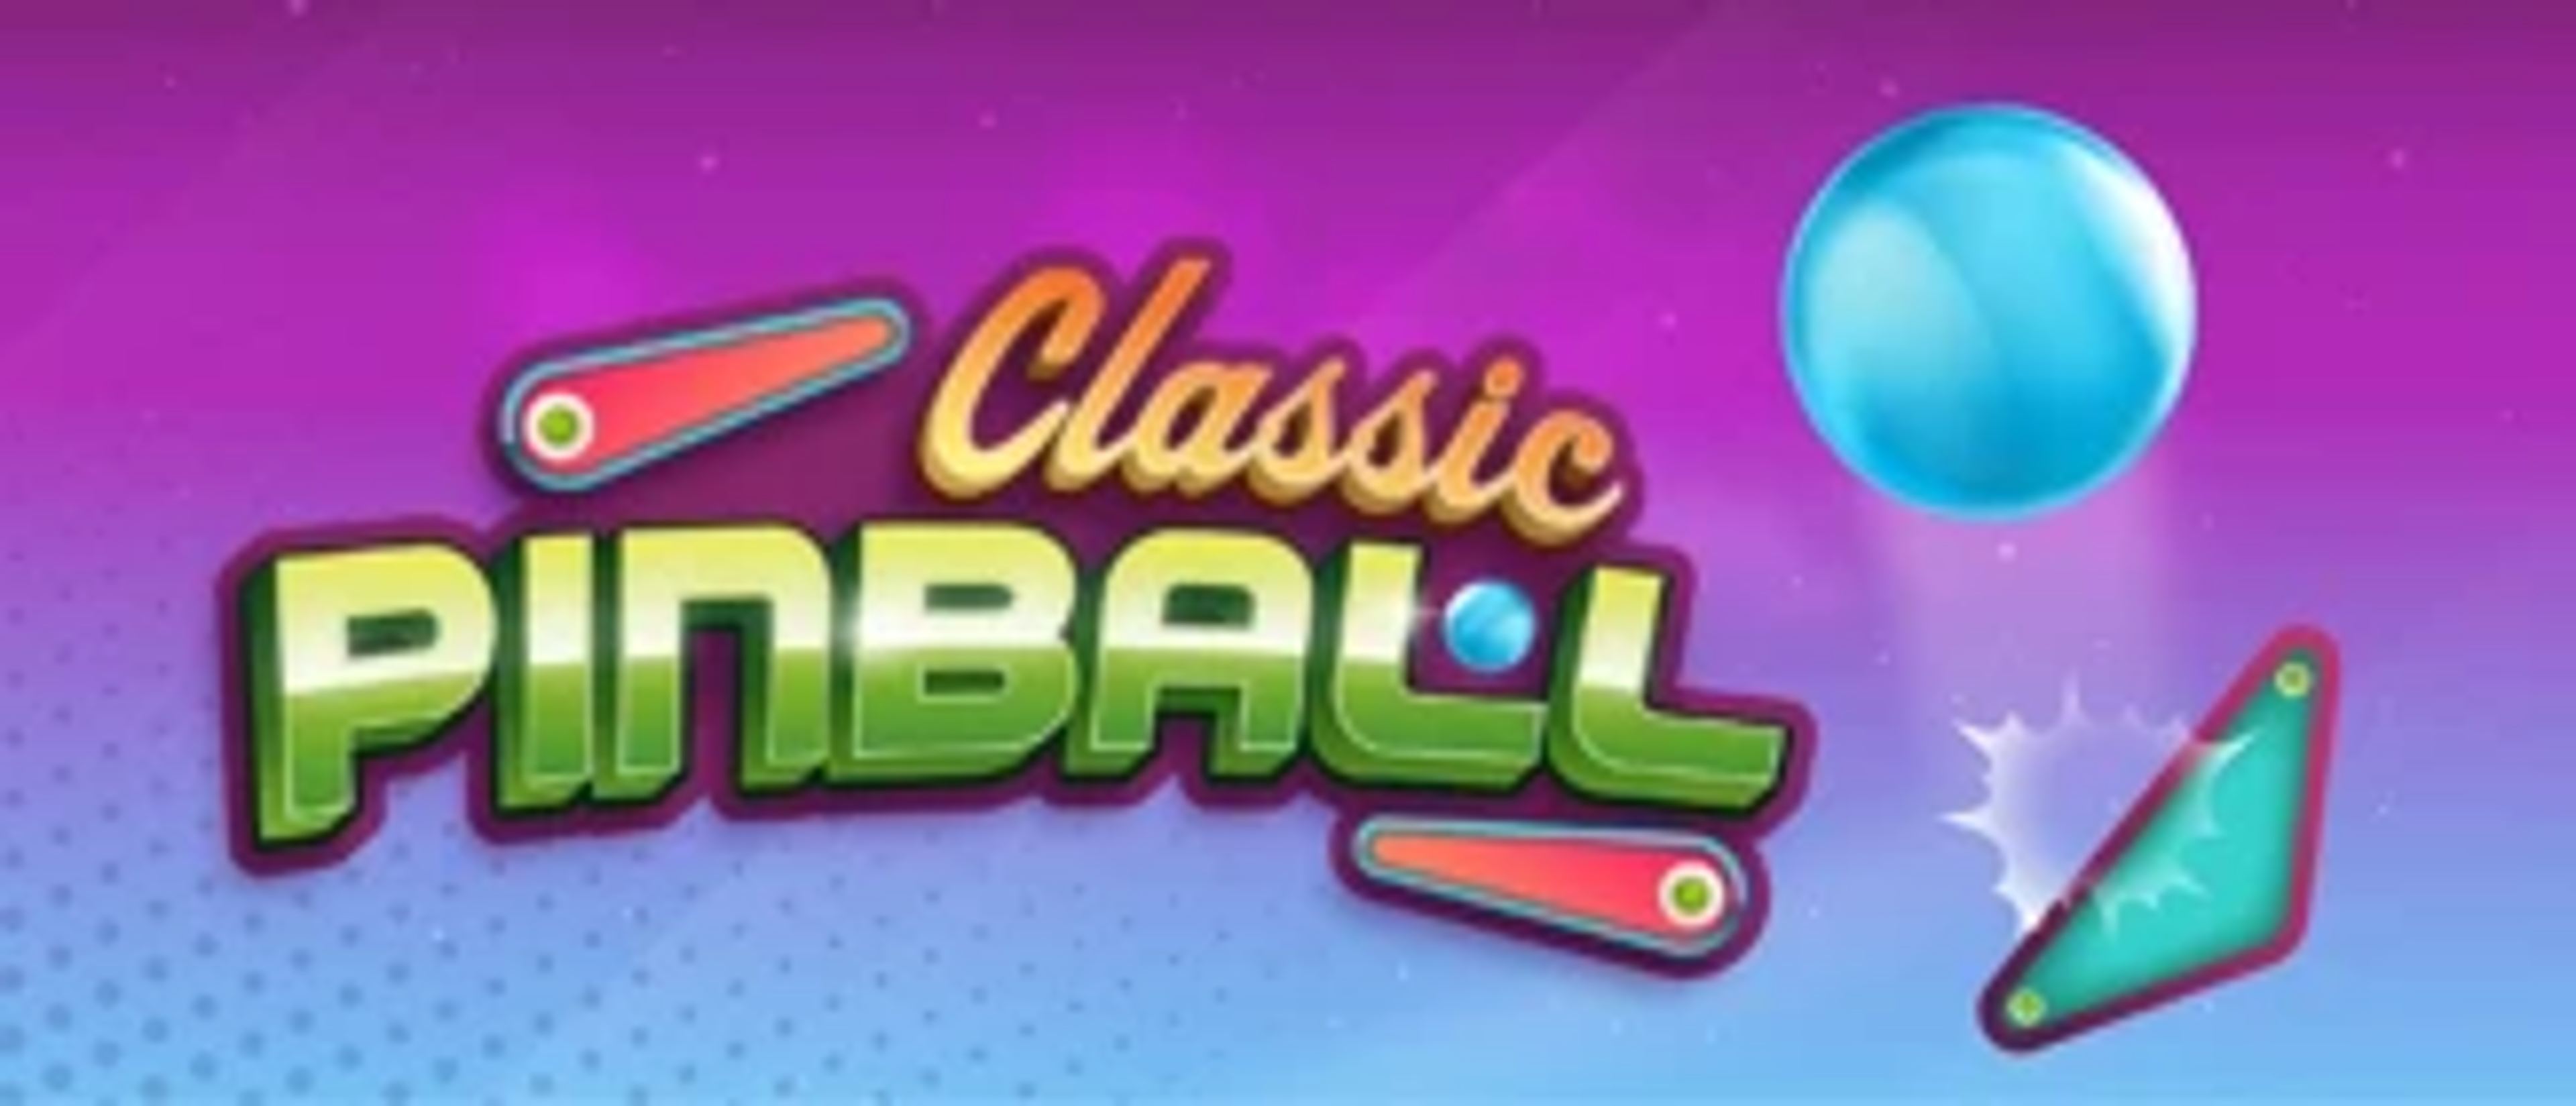 Classic Pinball